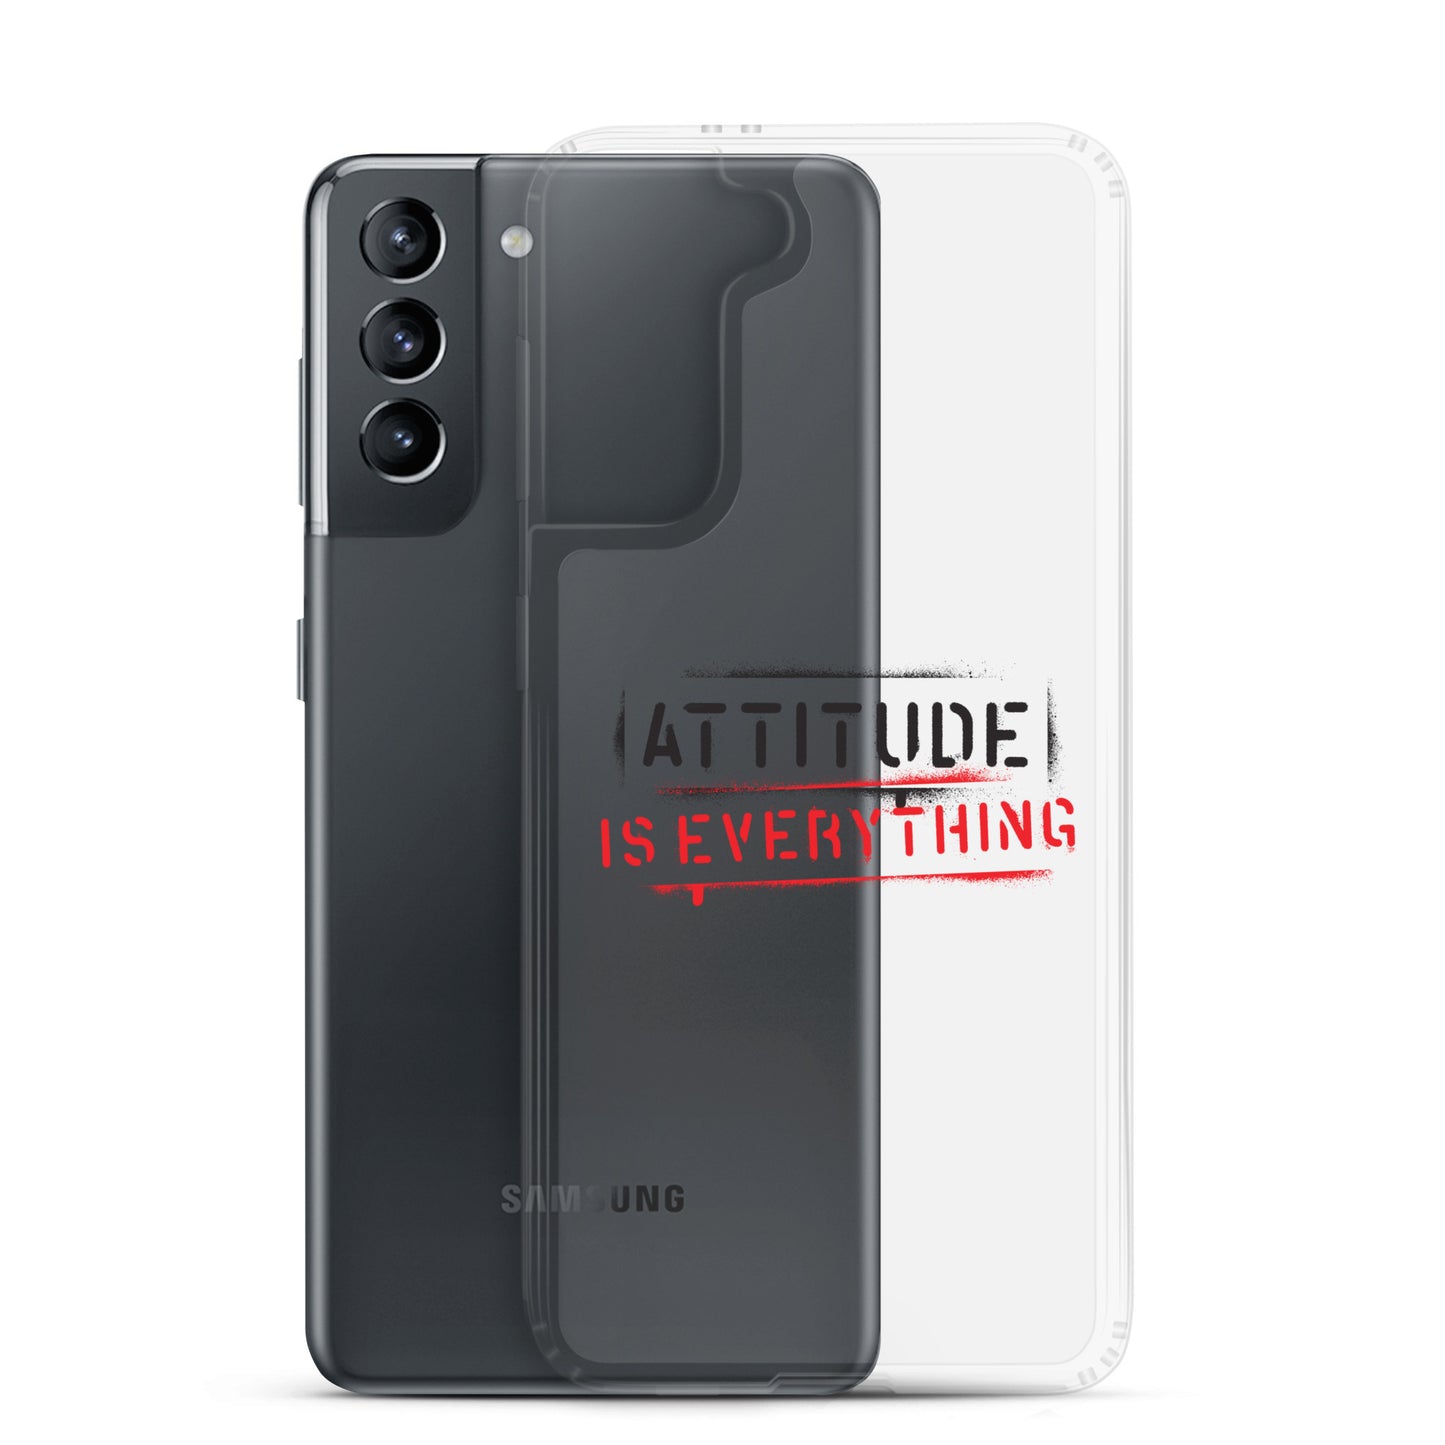 Samsung® Case Attitude